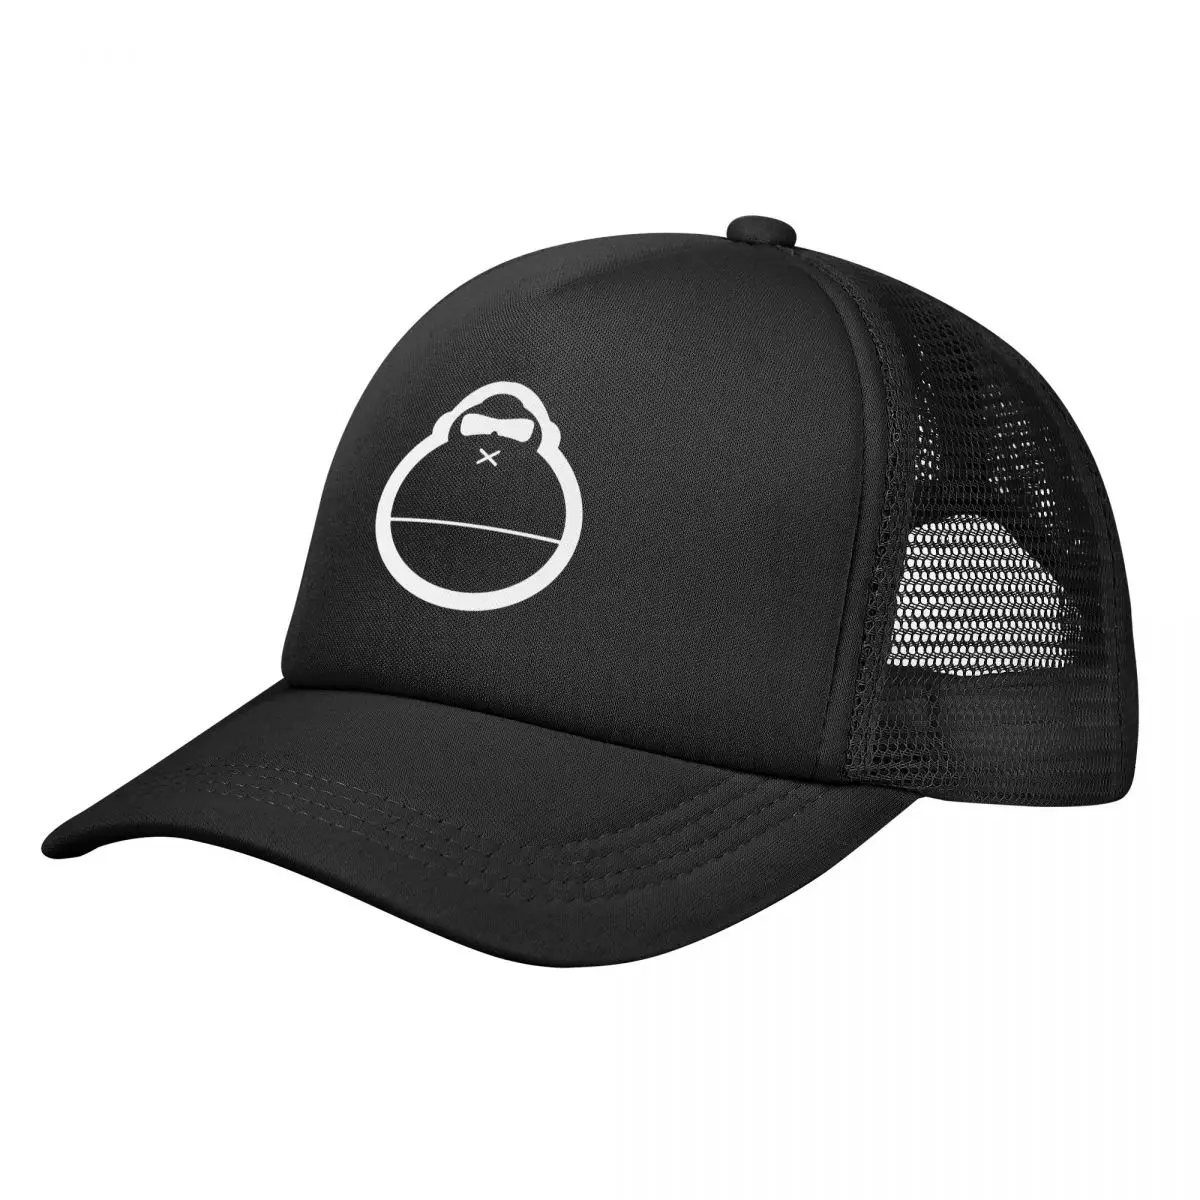 

Кепка с защитой от солнца, желтая бейсболка Gorilla, кепка для бега, кепки для гольфа, мужские кепки для мариклебола, шапка для мужчин и женщин, защита от солнца